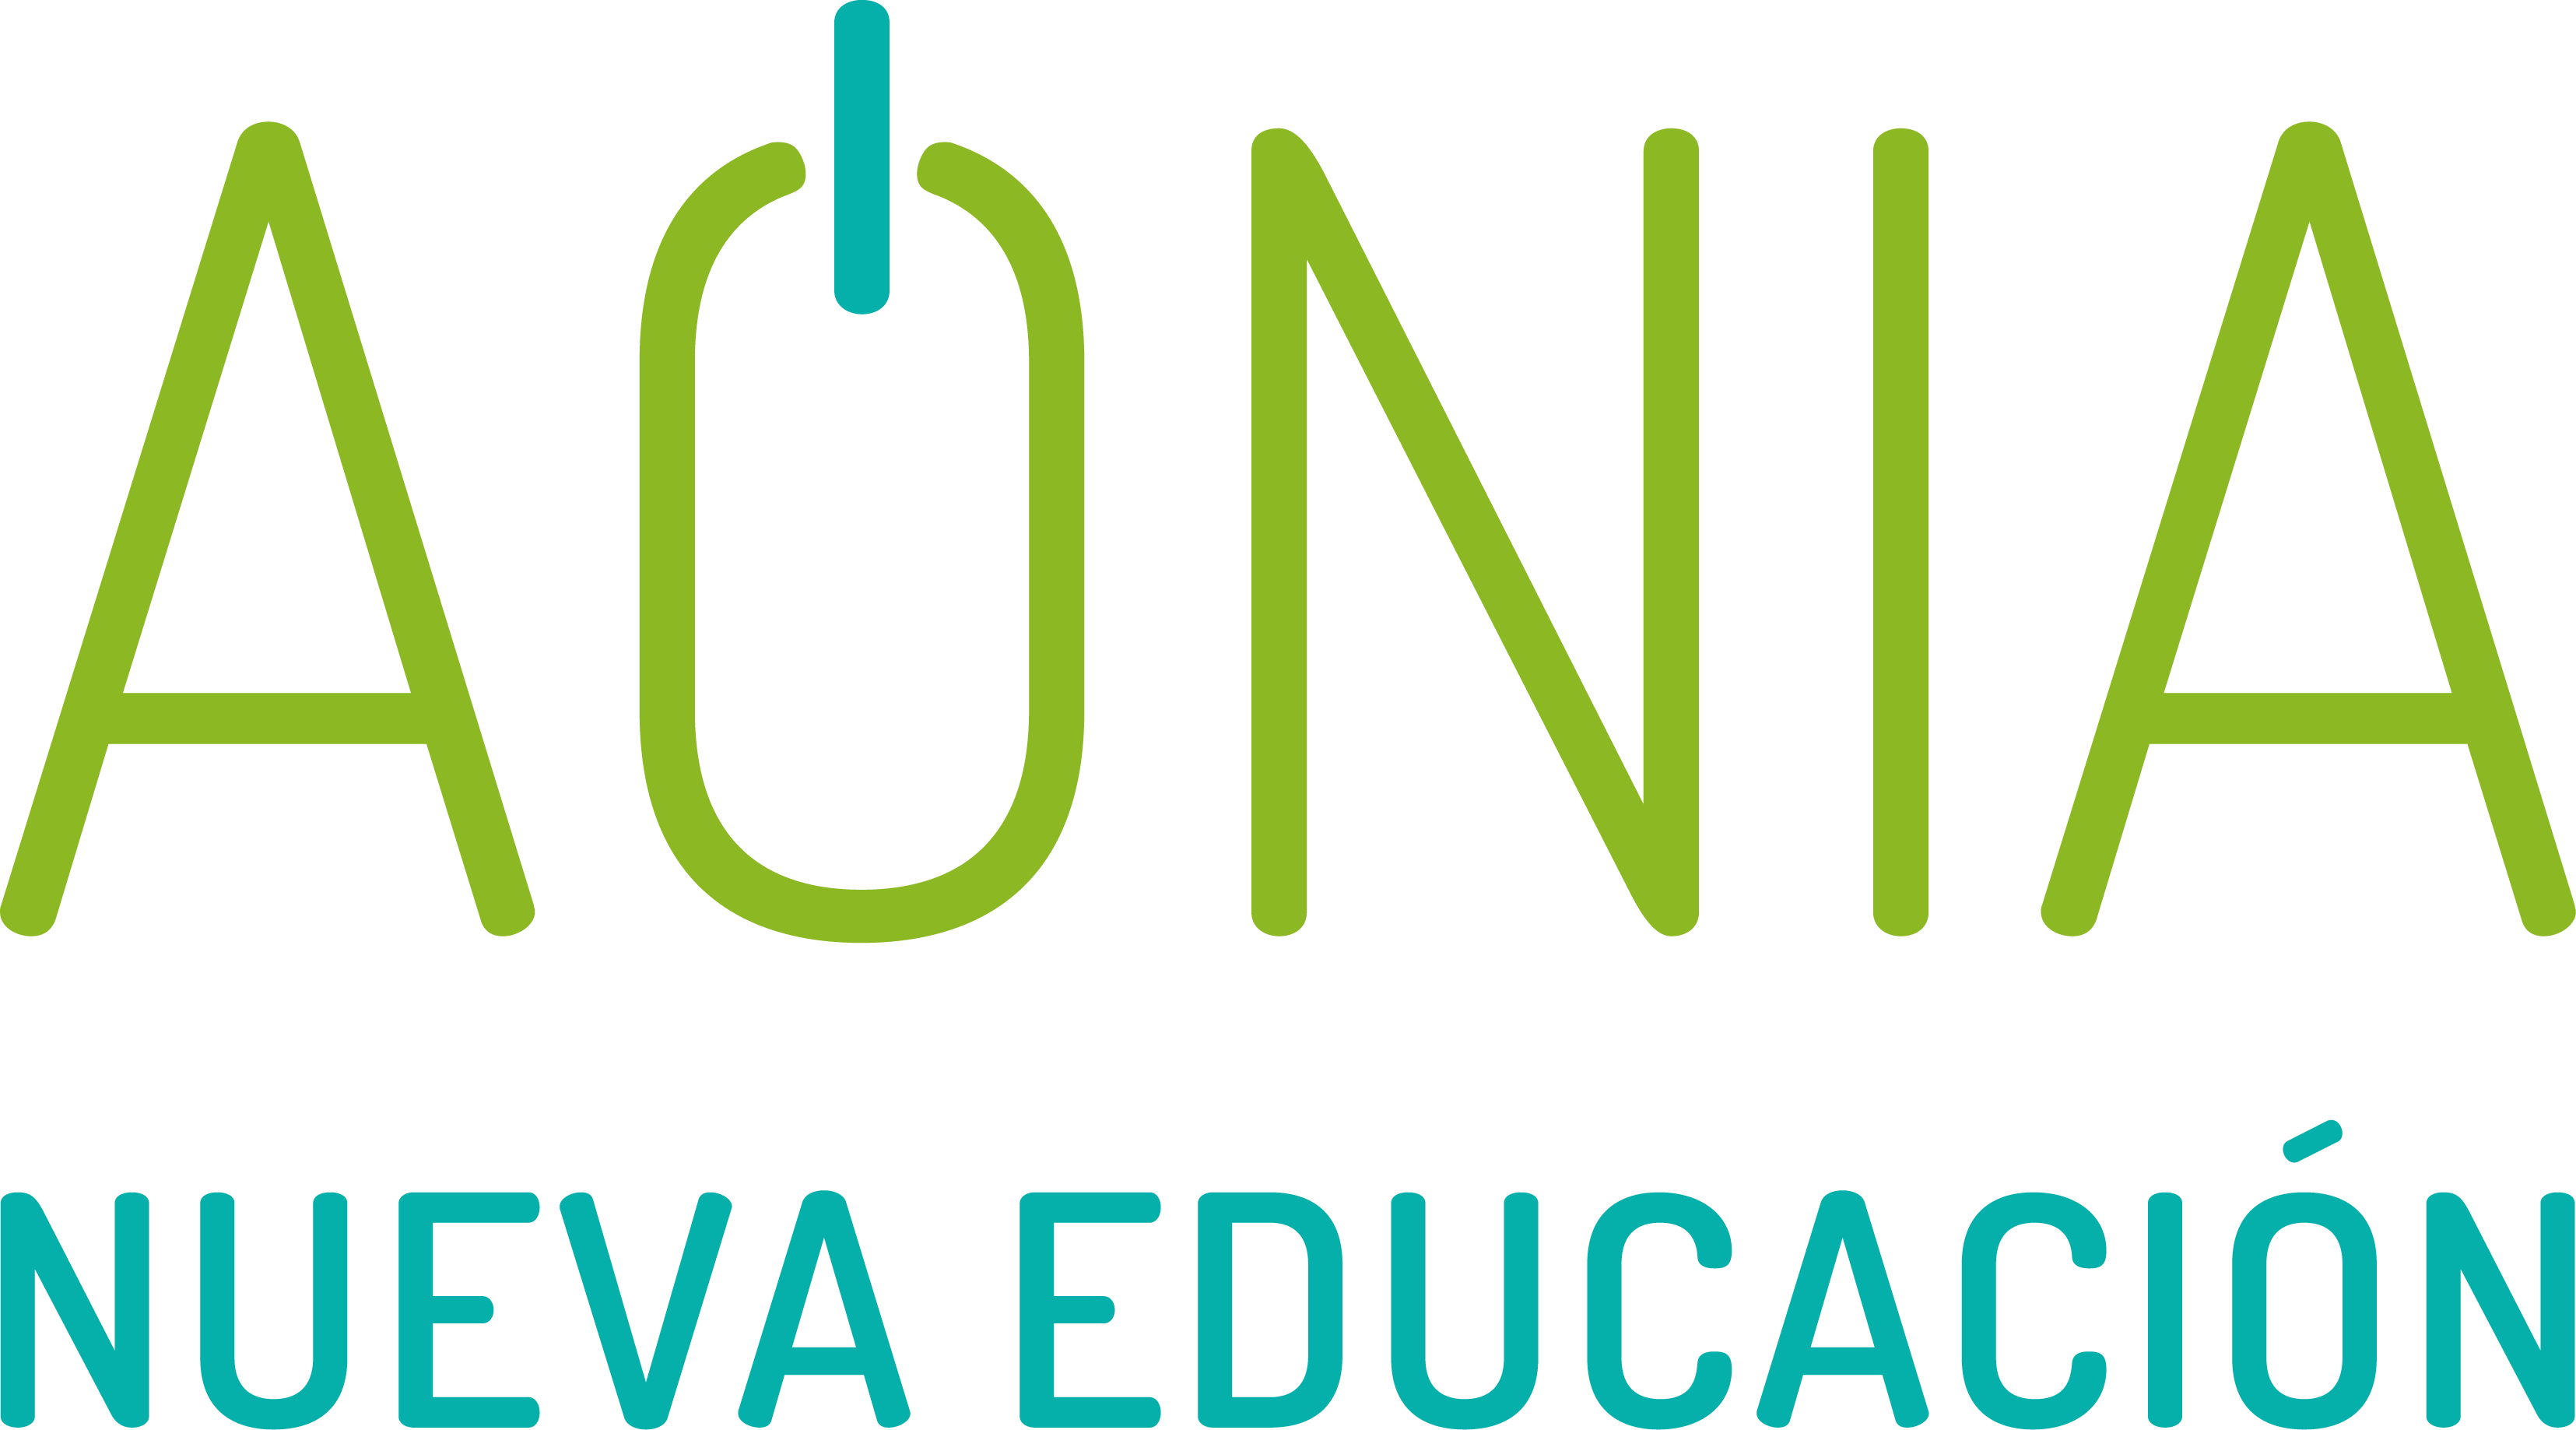 Aonia Nueva Educación